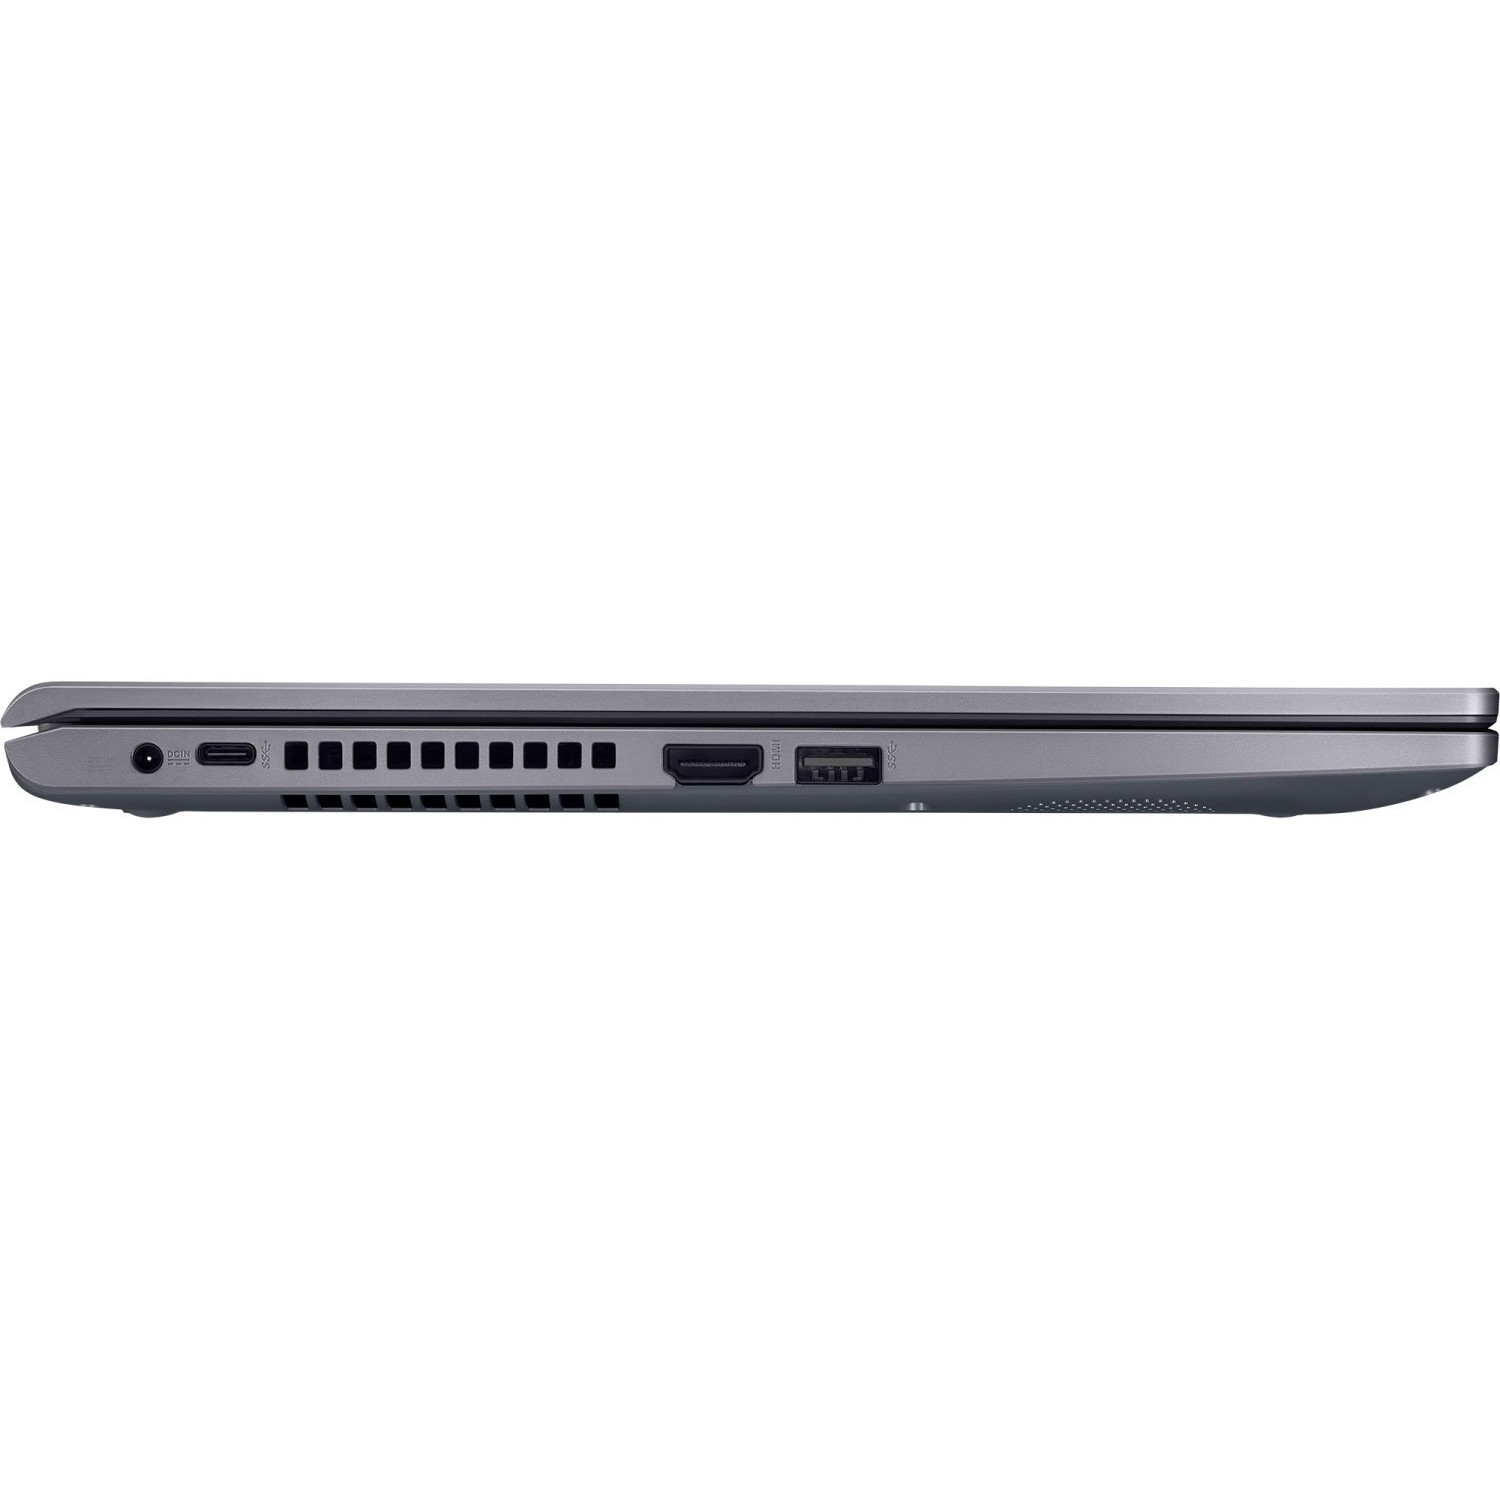 Ноутбук Asus R565ma Br203t Цена